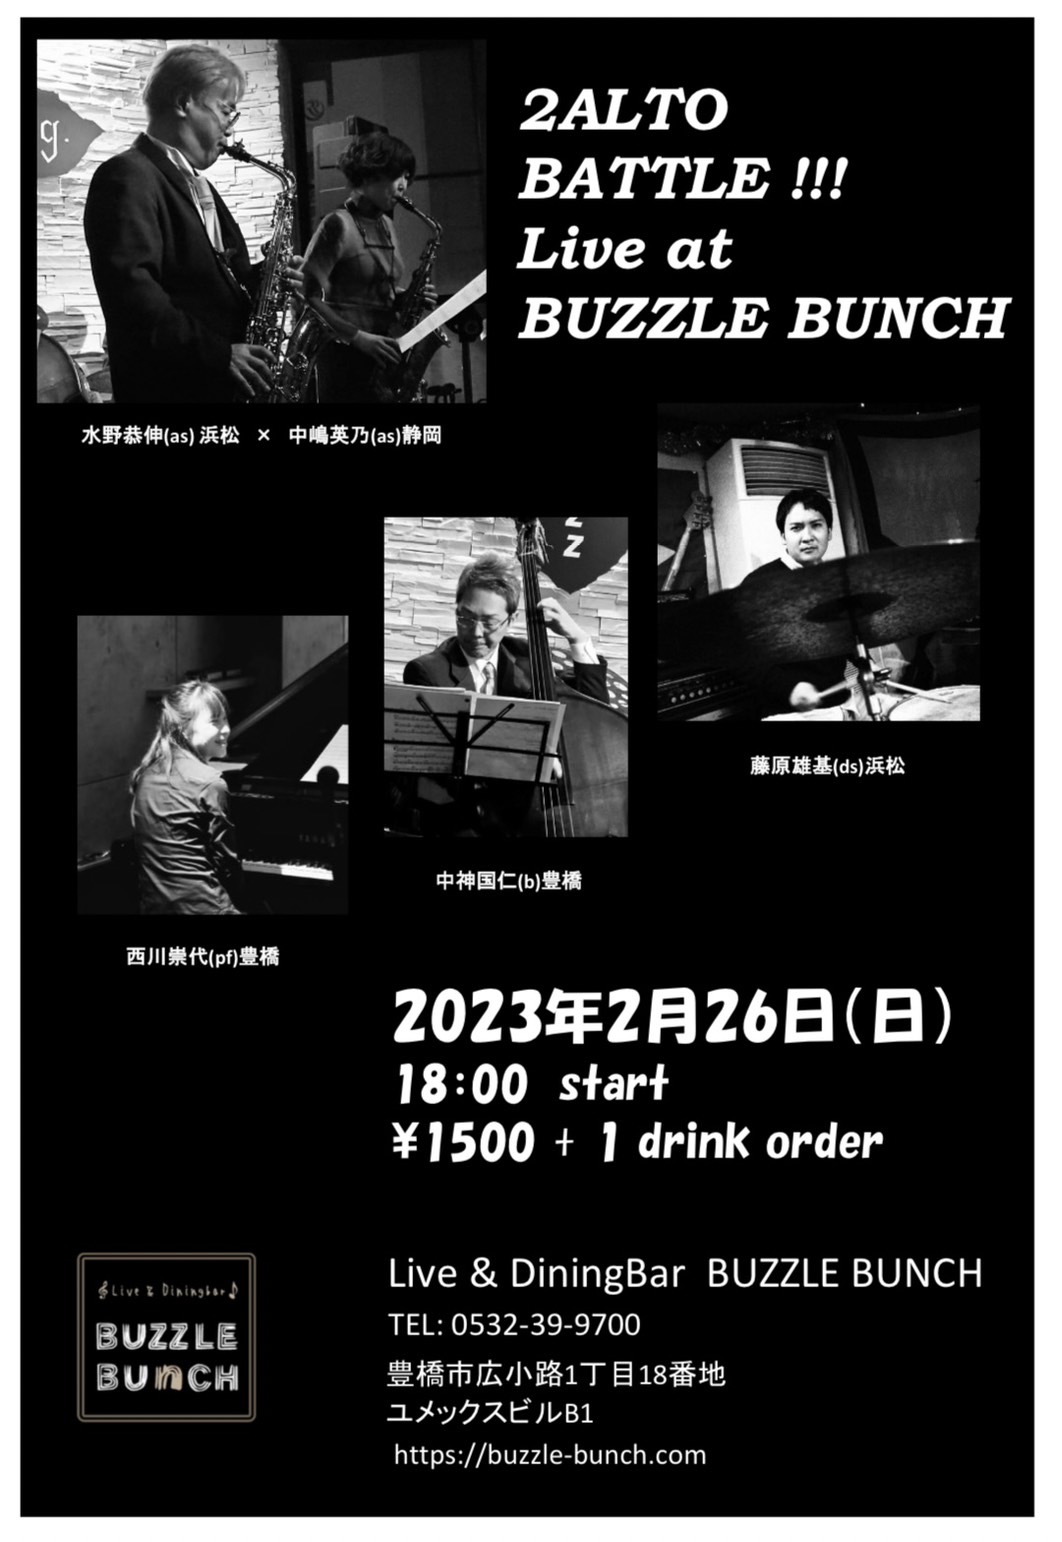 2023年2月26日(日) 2ALTO BATTLE !!! Live at BUZZLE BUNCH